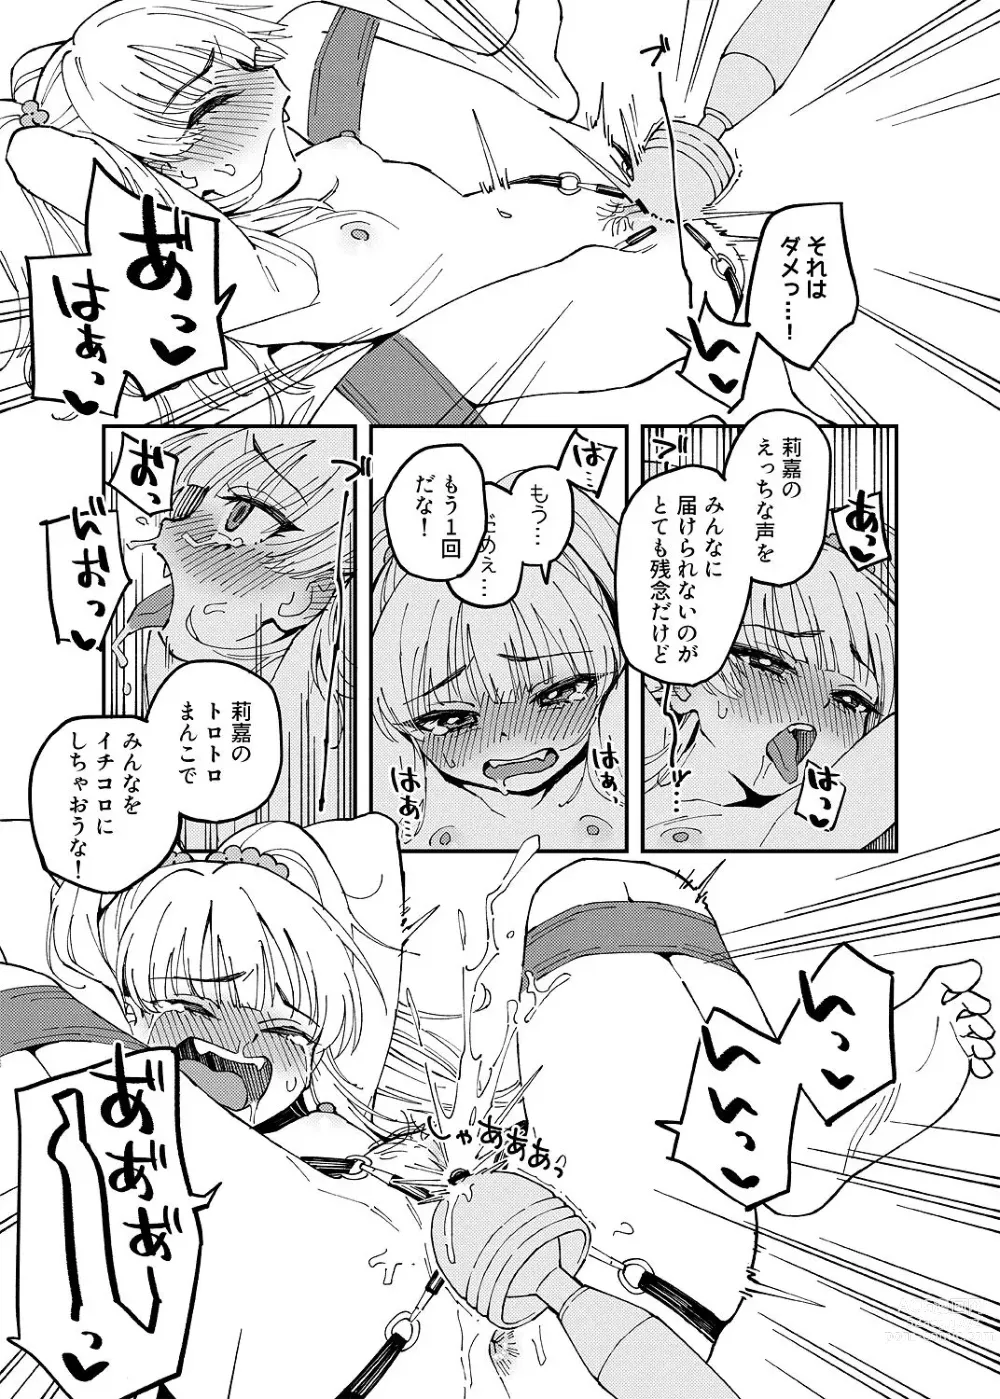 Page 3 of doujinshi Rika-chan